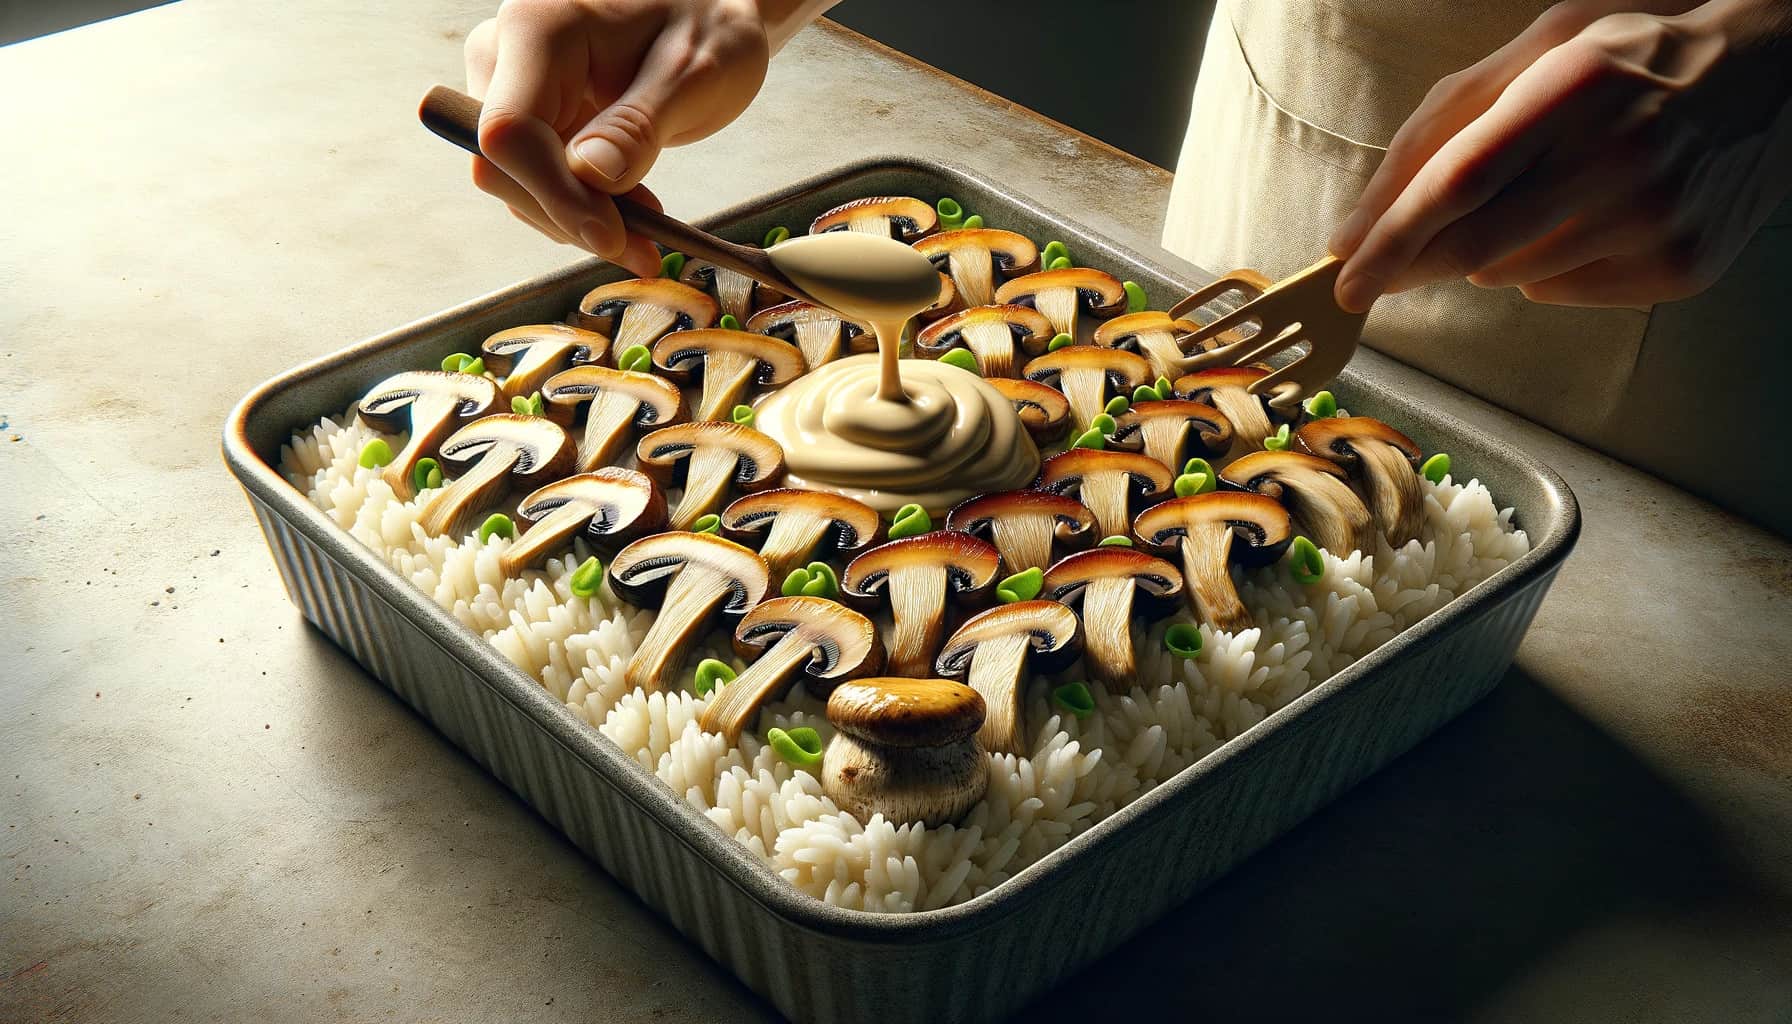 Vegan sushi bake recipe